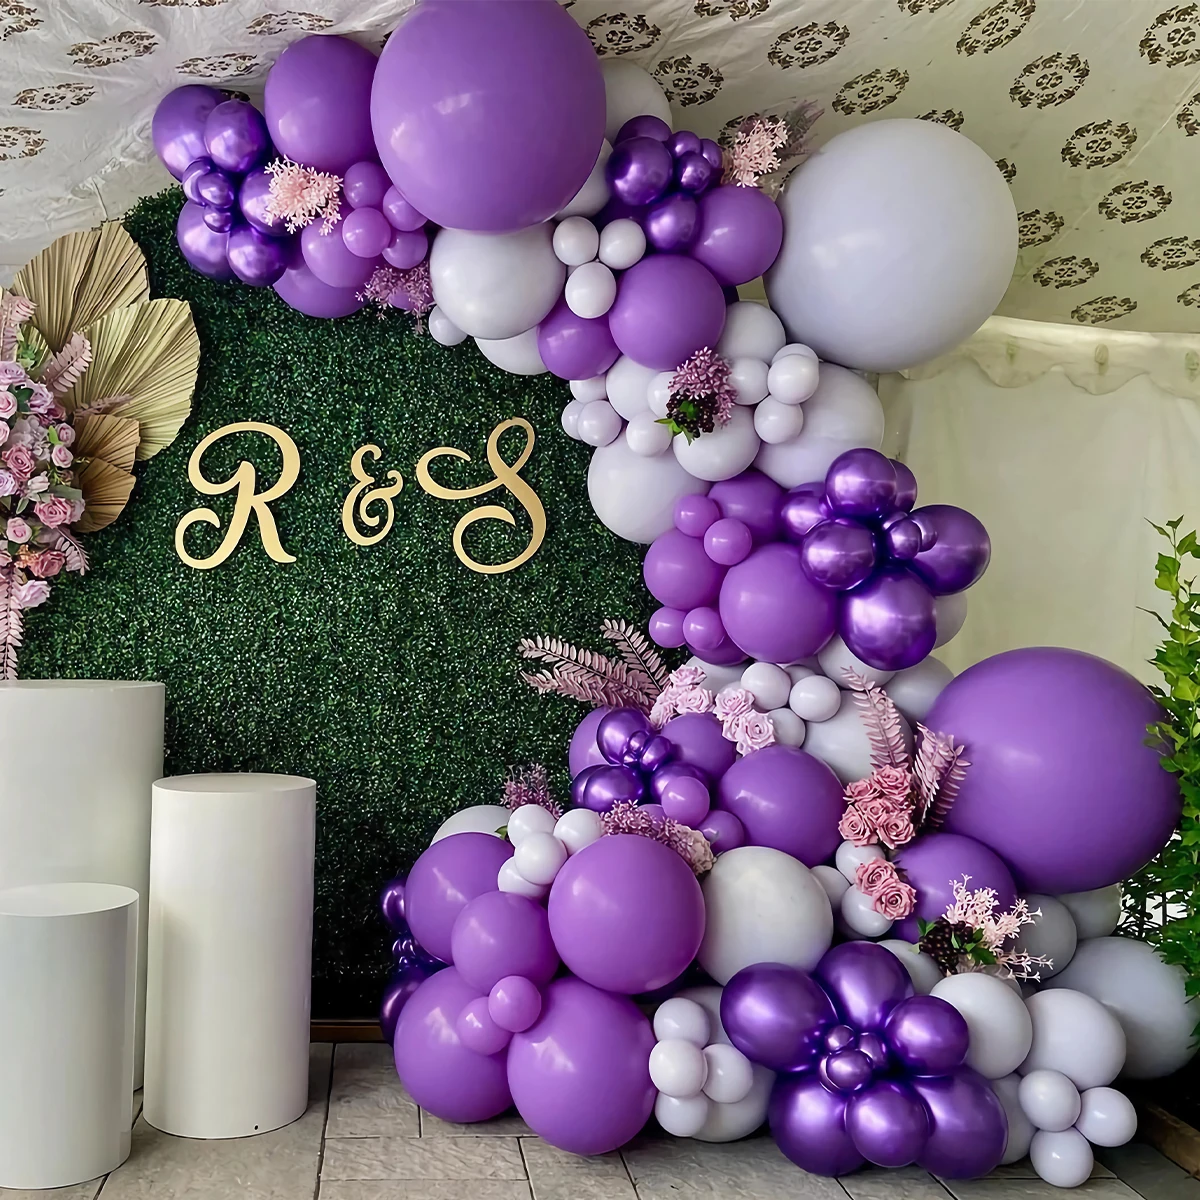 

Гирлянда с фиолетовыми воздушными шарами, украшение для свадьбы, дня рождения, детский шар на 1-й день рождения для девочек, украшение для детского праздника, латексный шар